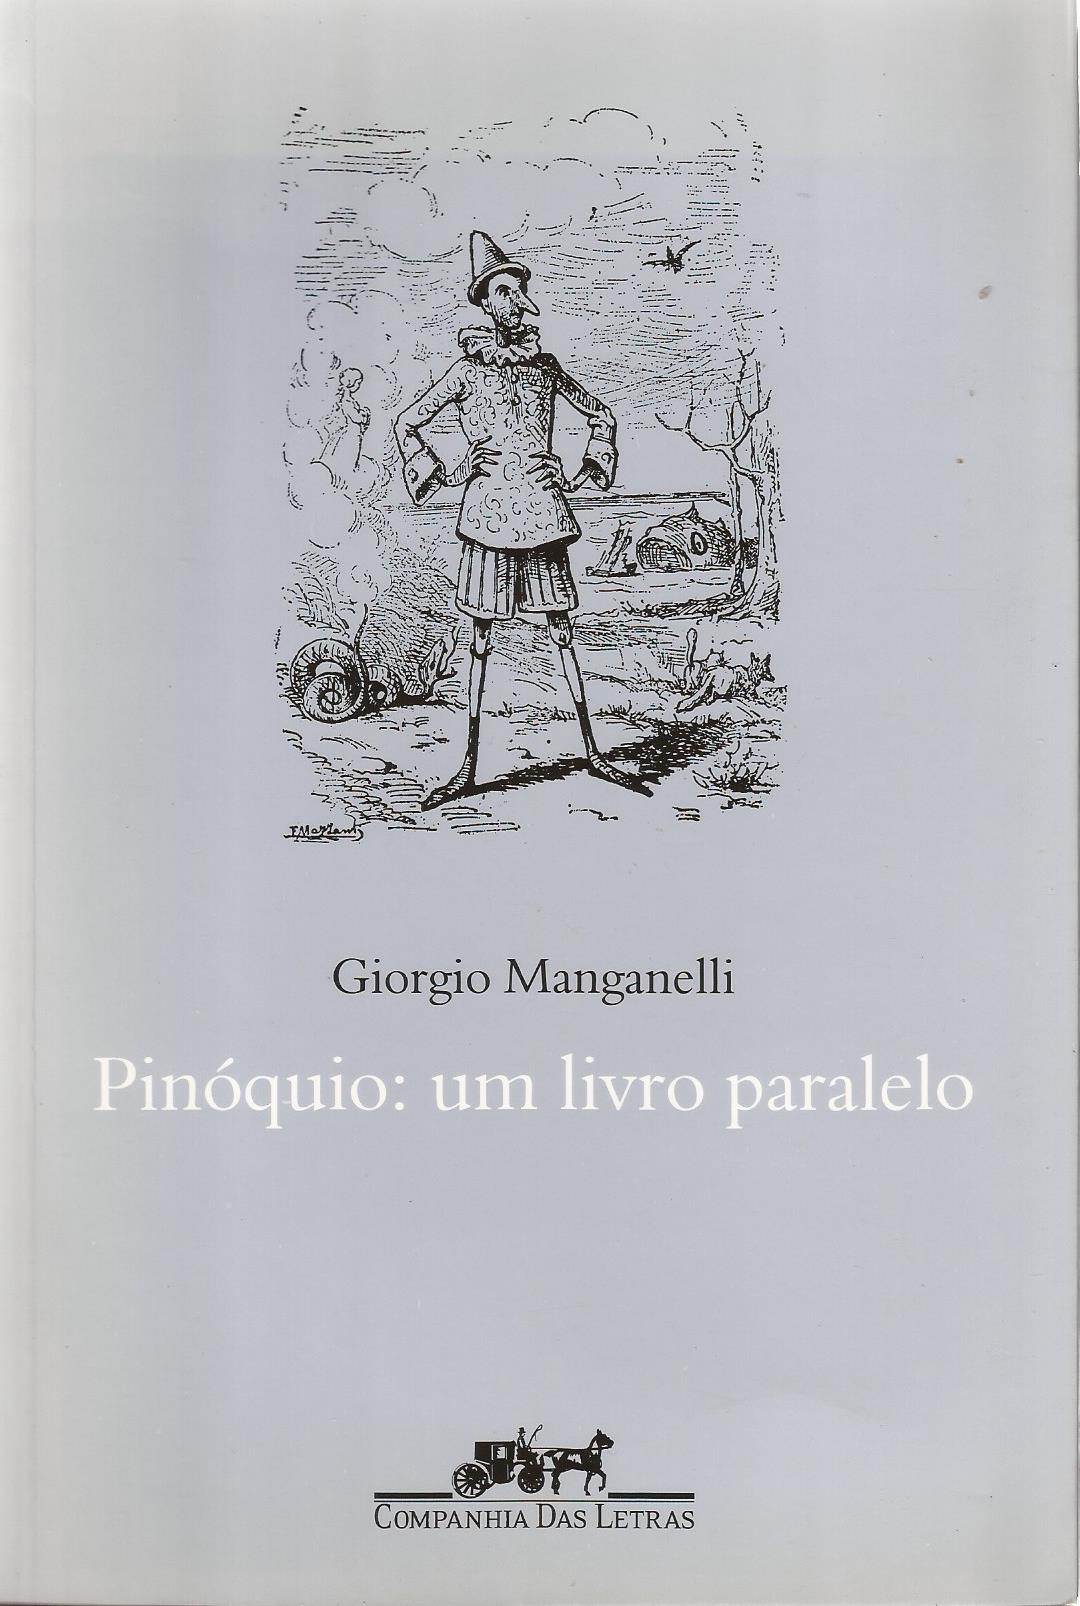 https://www.literaturabrasileira.ufsc.br/_images/obras/pinoquio_um_livro_paralelo_2002_ok.jpg